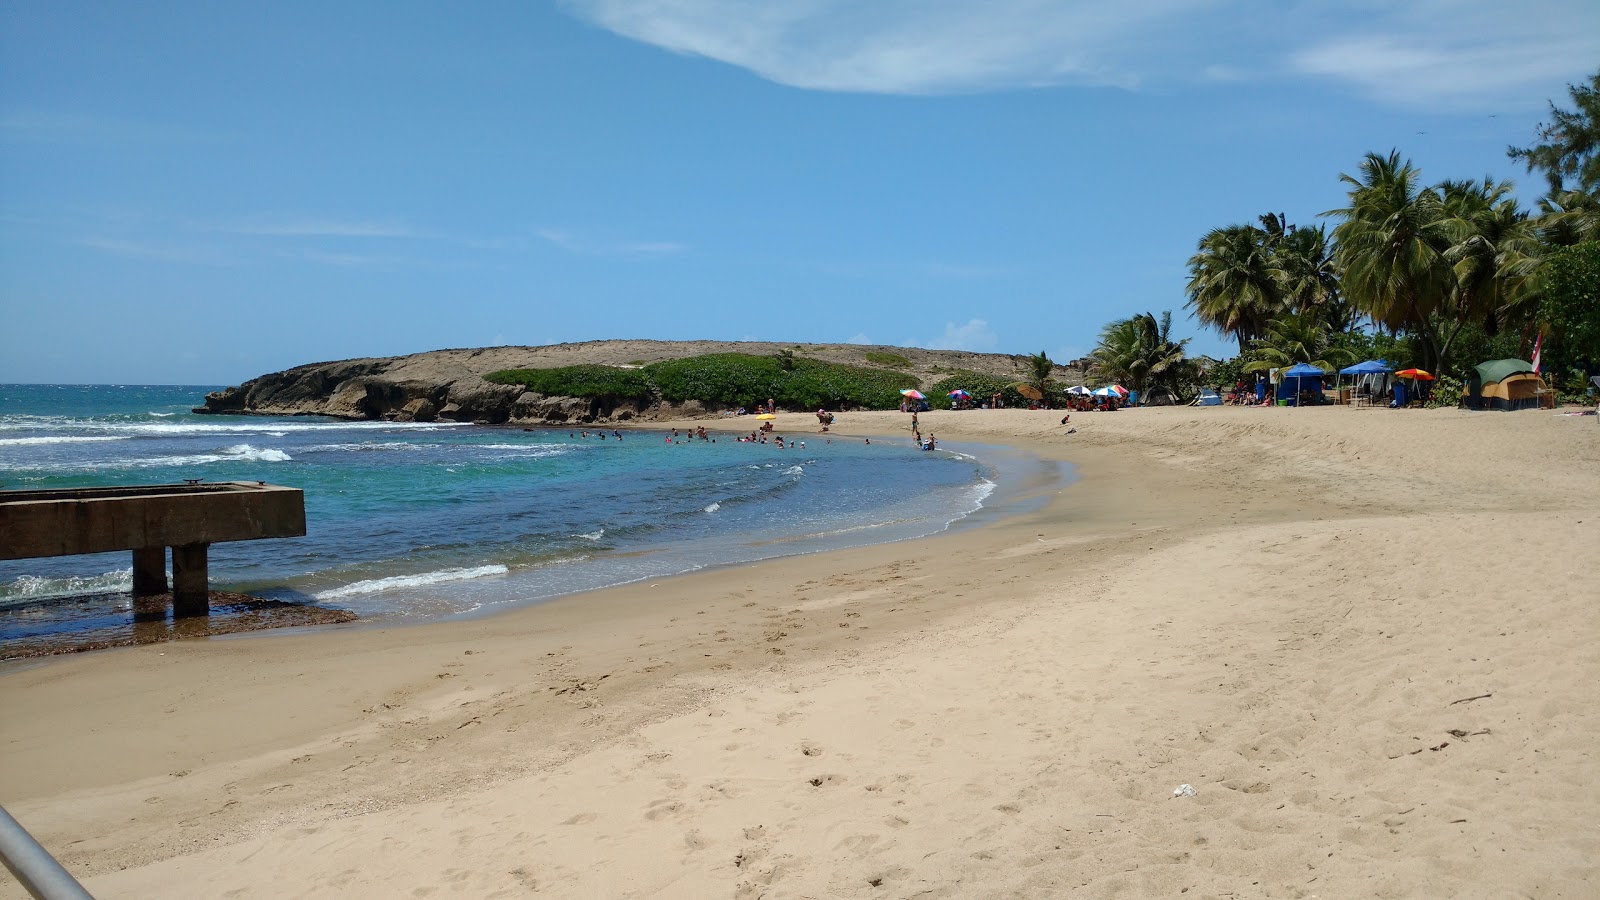 Penon Amador beach'in fotoğrafı parlak kum yüzey ile